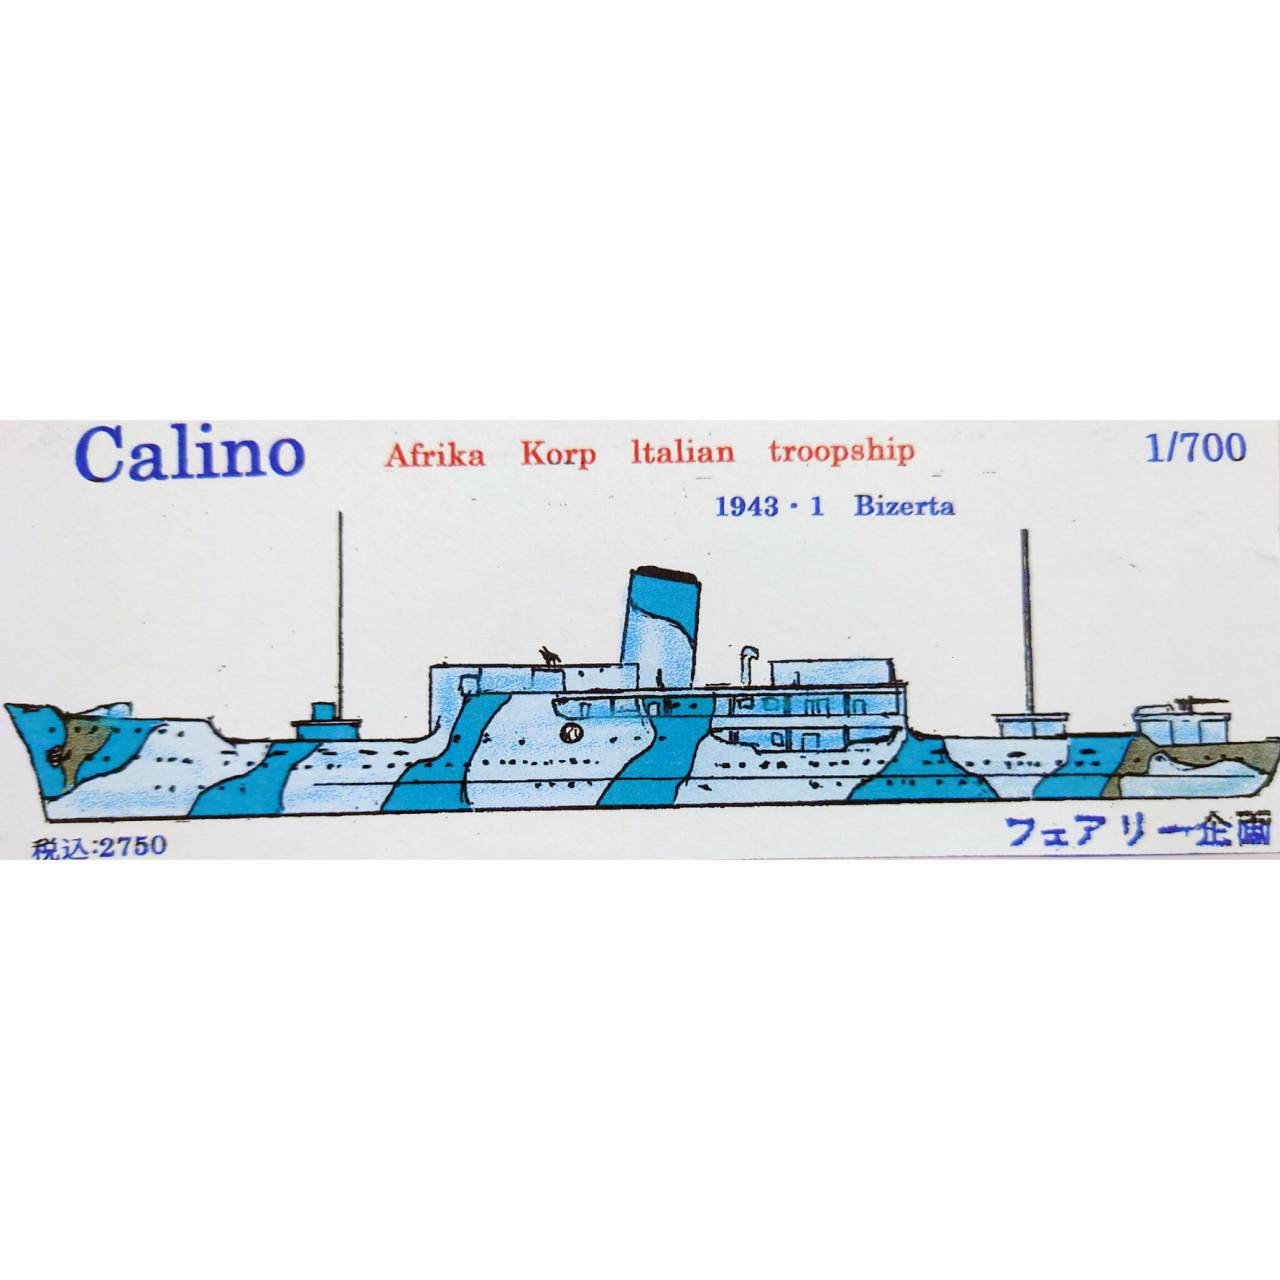 【新製品】199 イタリア輸送船 カリーノ Calino ドイツアフリカ軍団 1943年1月ビゼルト【ネコポス規格外】